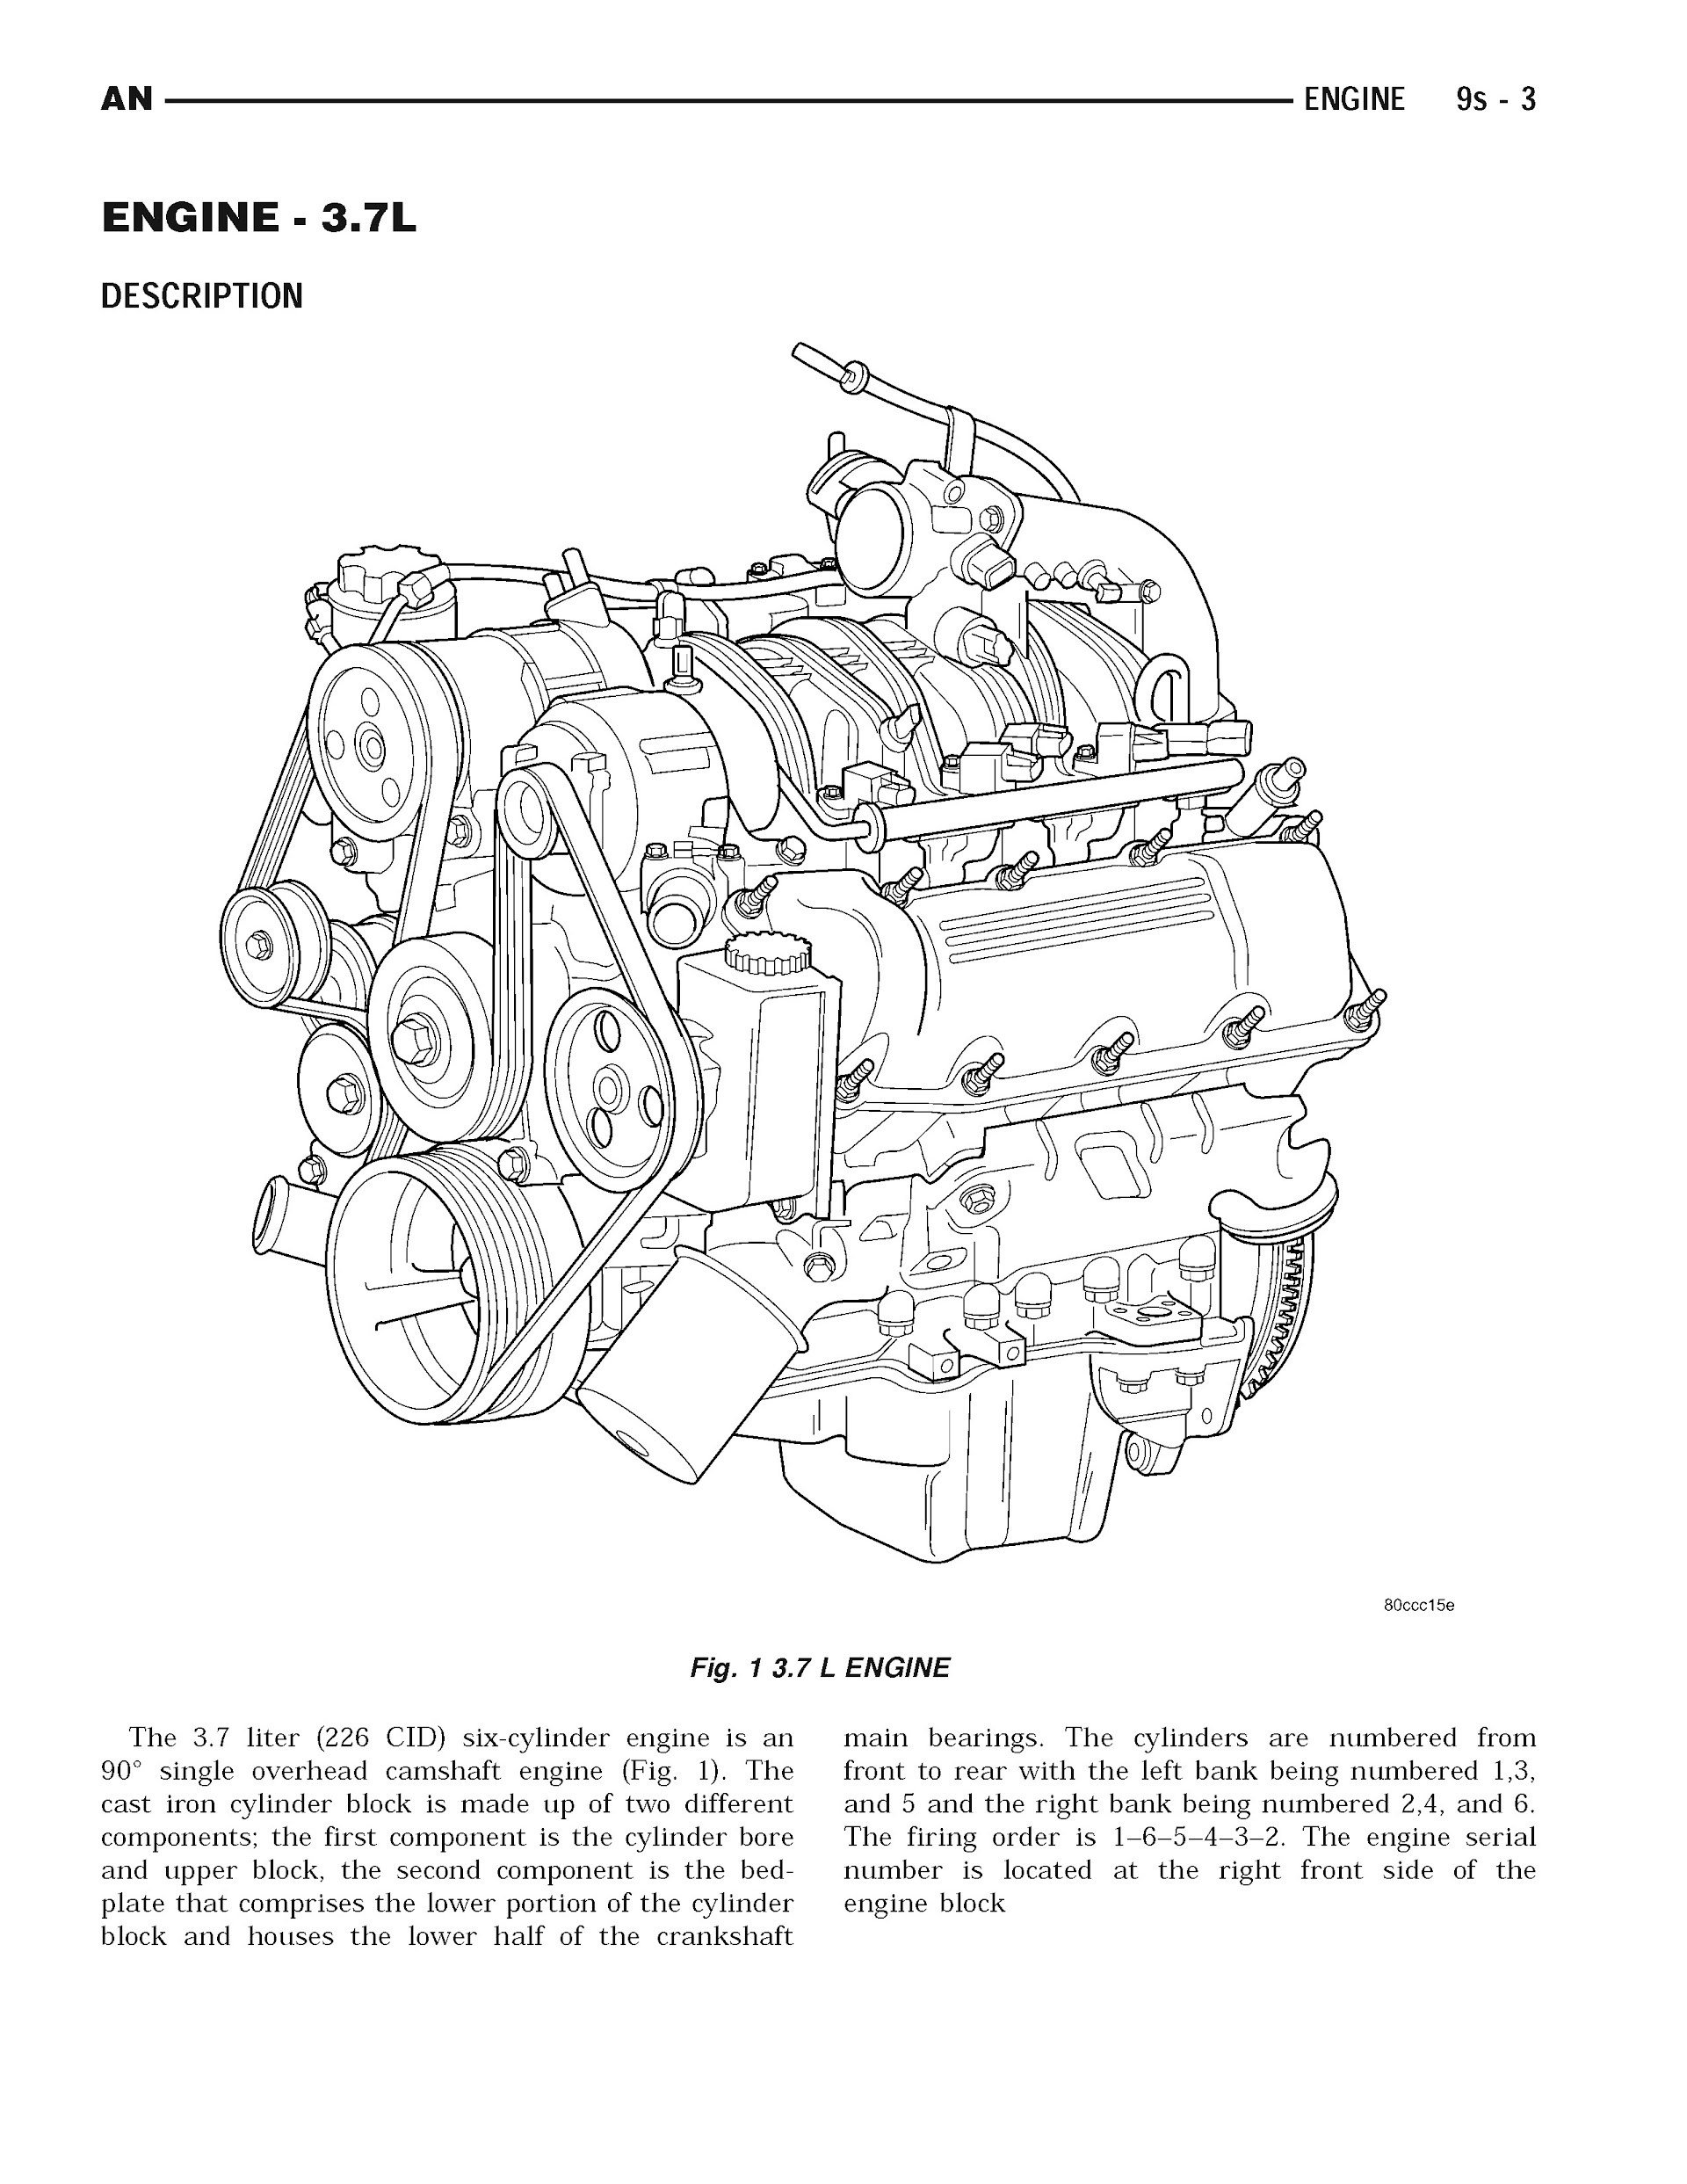 2004 Dodge Dakota Repair Manual, Engine 3.7L